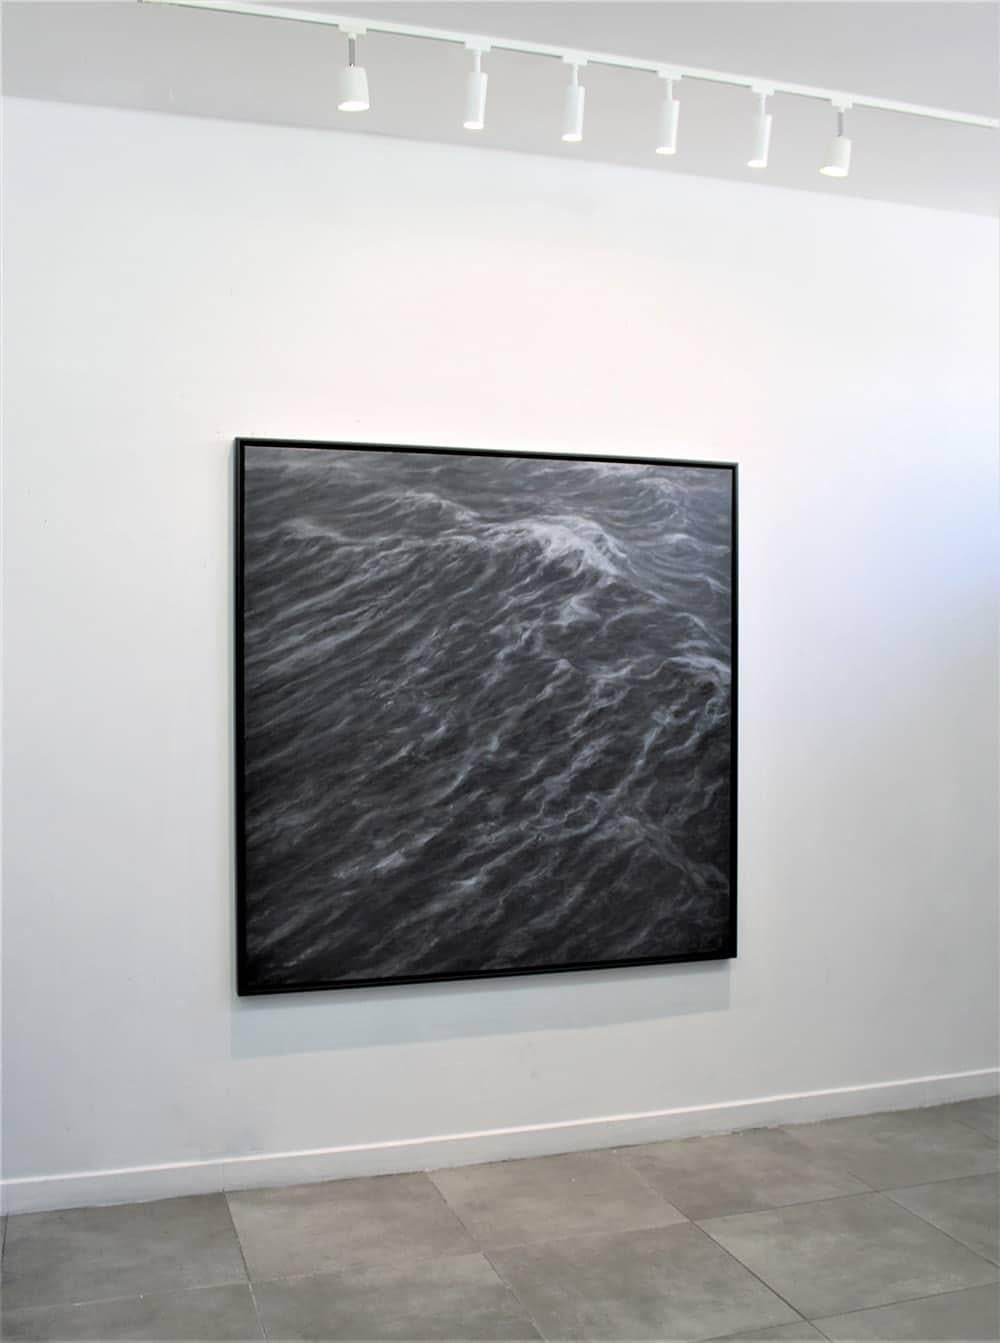 The Duel by Franco Salas Borquez - Contemporary oil painting, seascape, waves 5